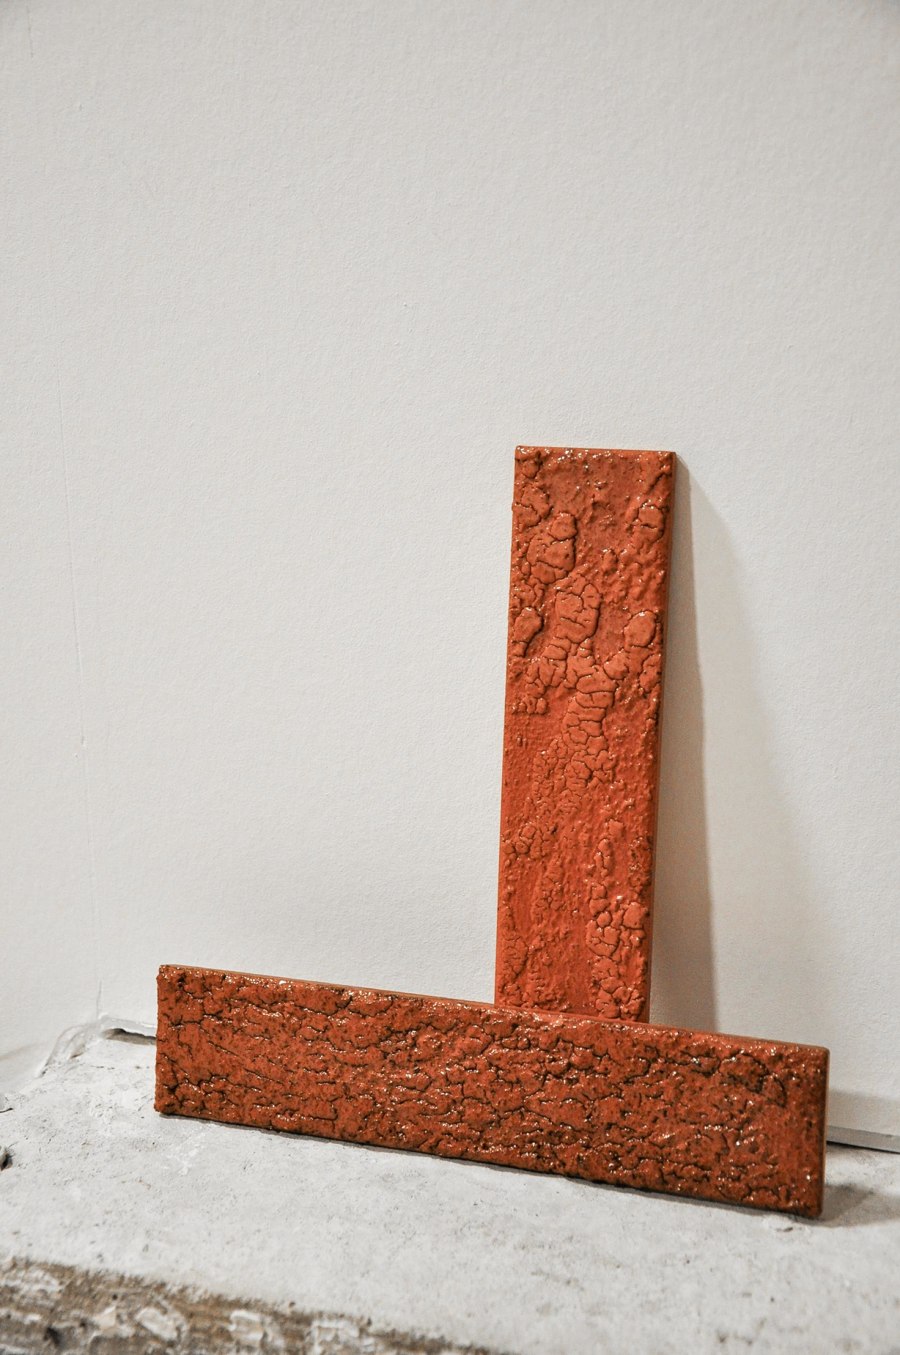 Rethinking brick at Dutch Design Week 2023 | News